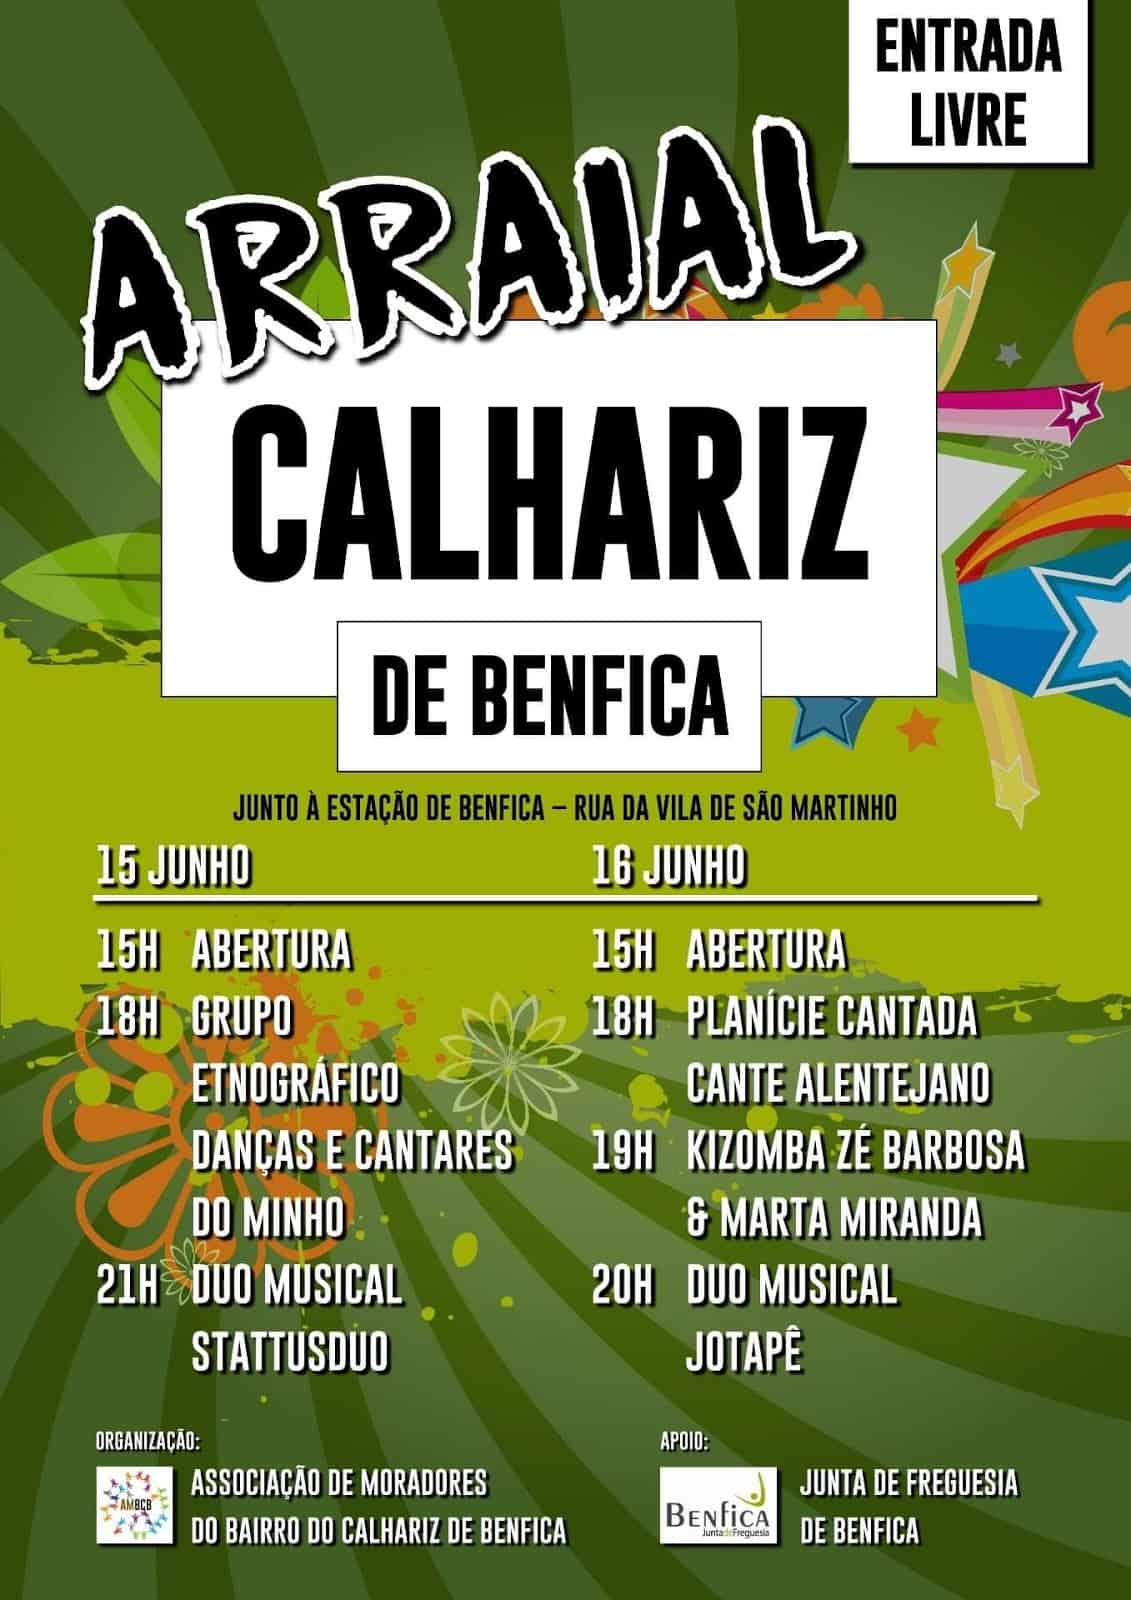 ARRAIAL CALHARIZ DE BENFICA 2019